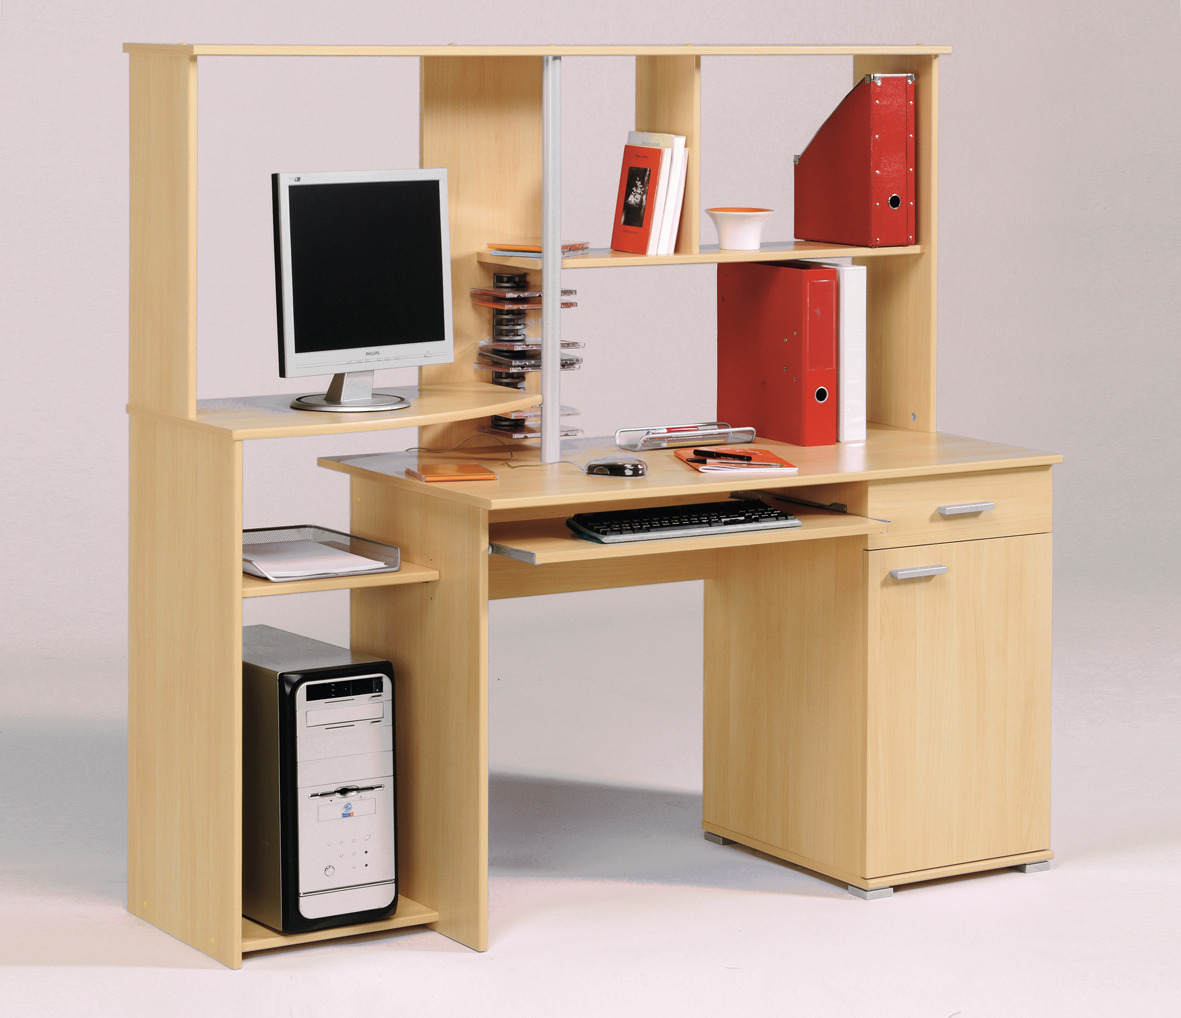  Contoh Desain Meja Komputer  dan Laptop Minimalis Gambar 